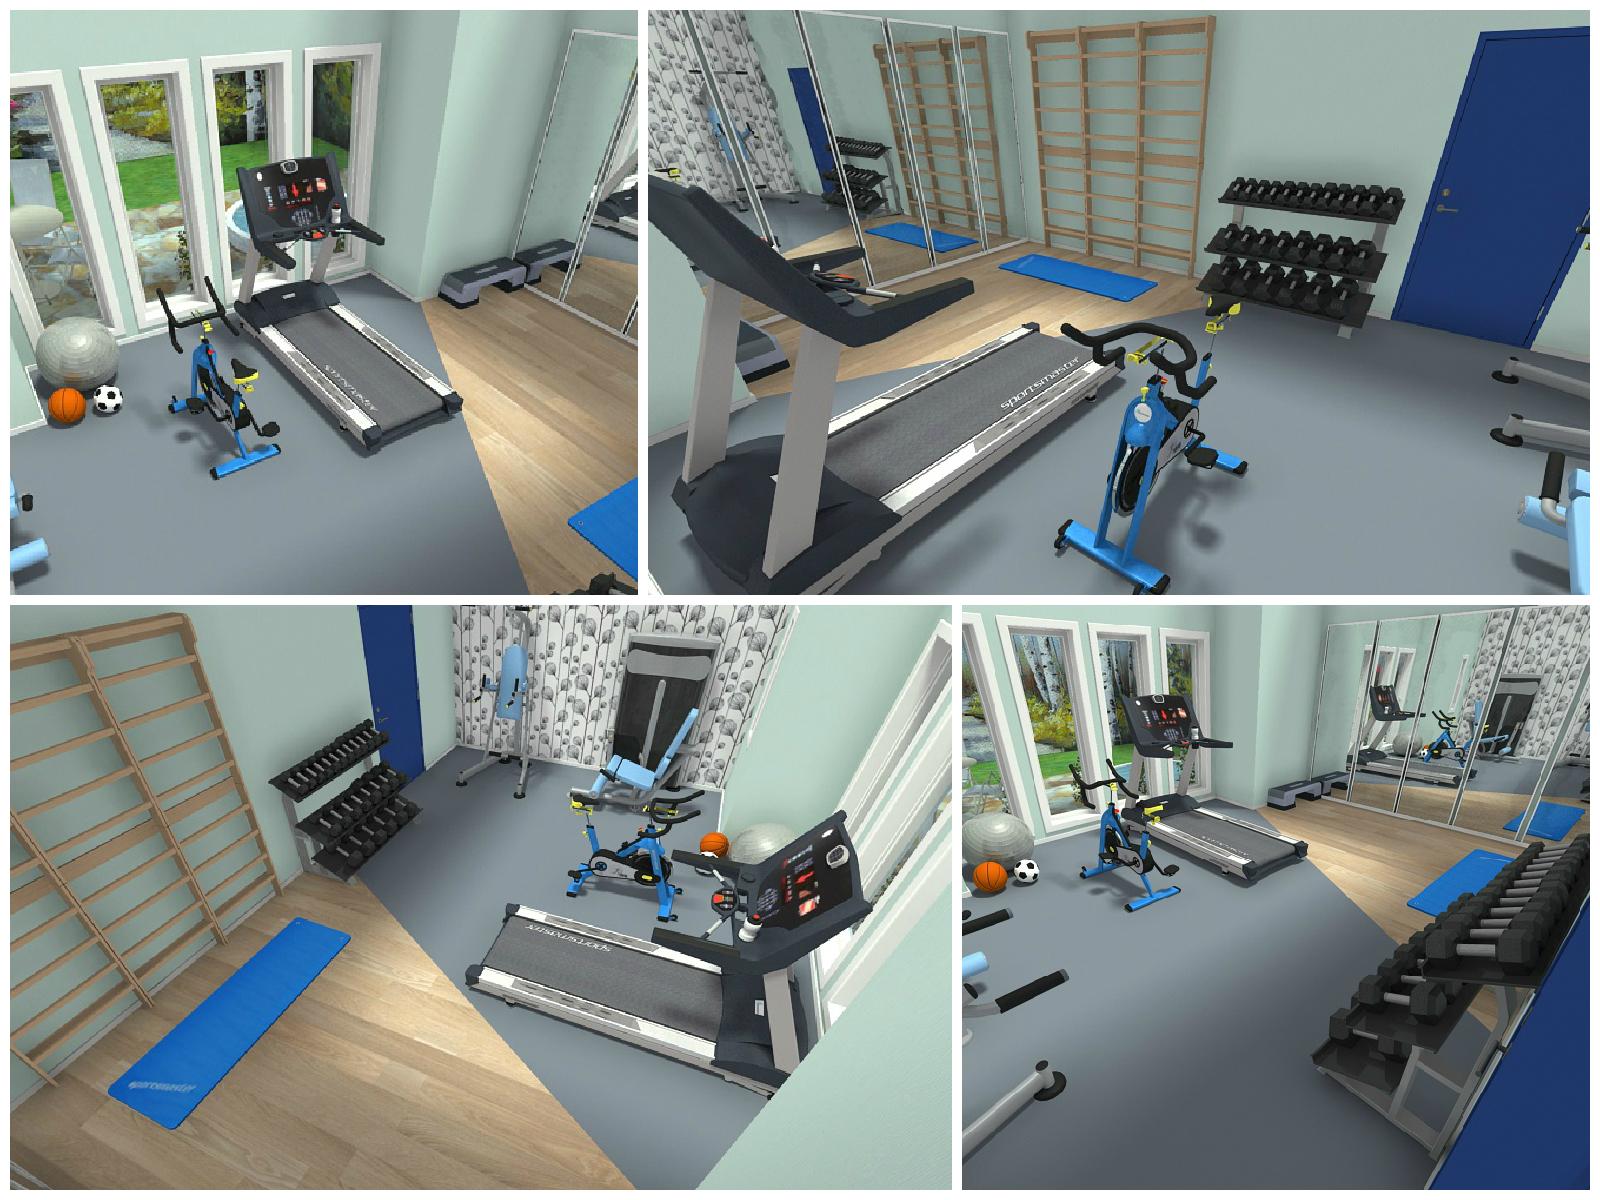 Fitnessraum-Planung in 3D #wellness #fitnessraum ©RoomSketcher